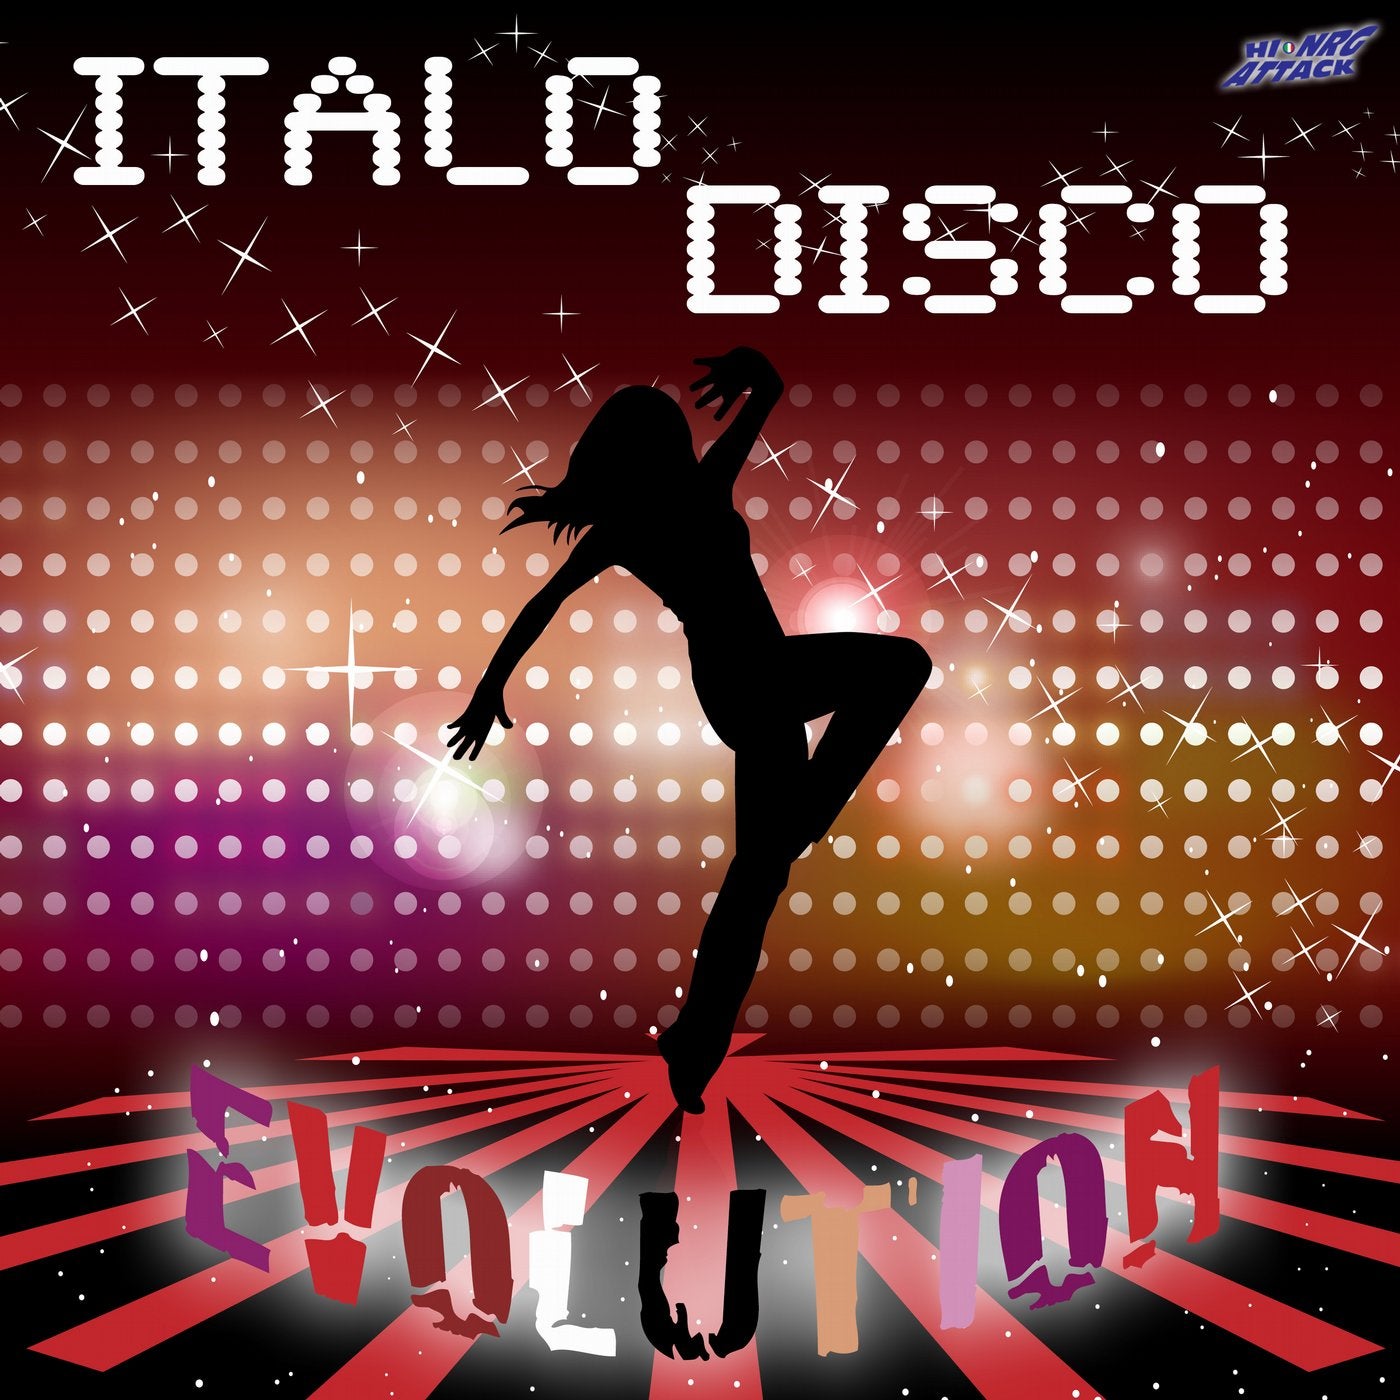 New euro italo disco. Итало диско. Итало диско итало диско. Диско танцы. Disco обложка.